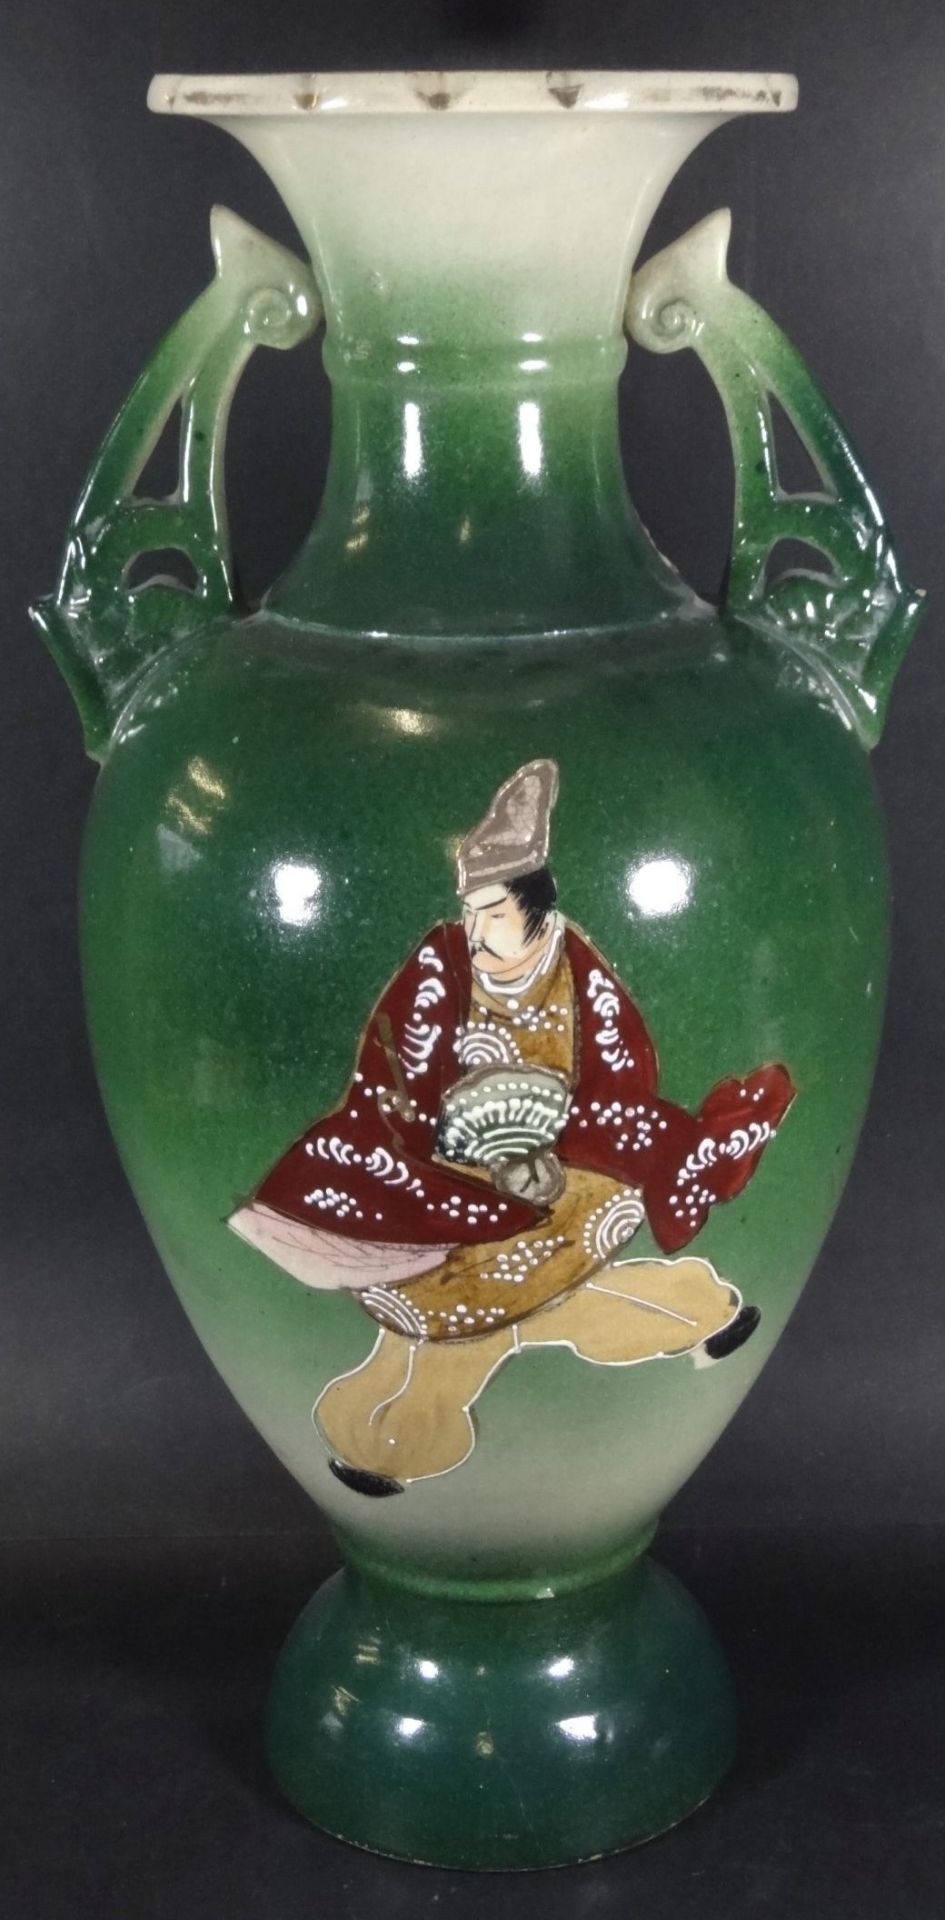 grosse China-Vase, Emaillemalerei, wohl um 1920?, H-45 cm, im Boden Schriftzeichen,- - -22.61 % - Bild 3 aus 7